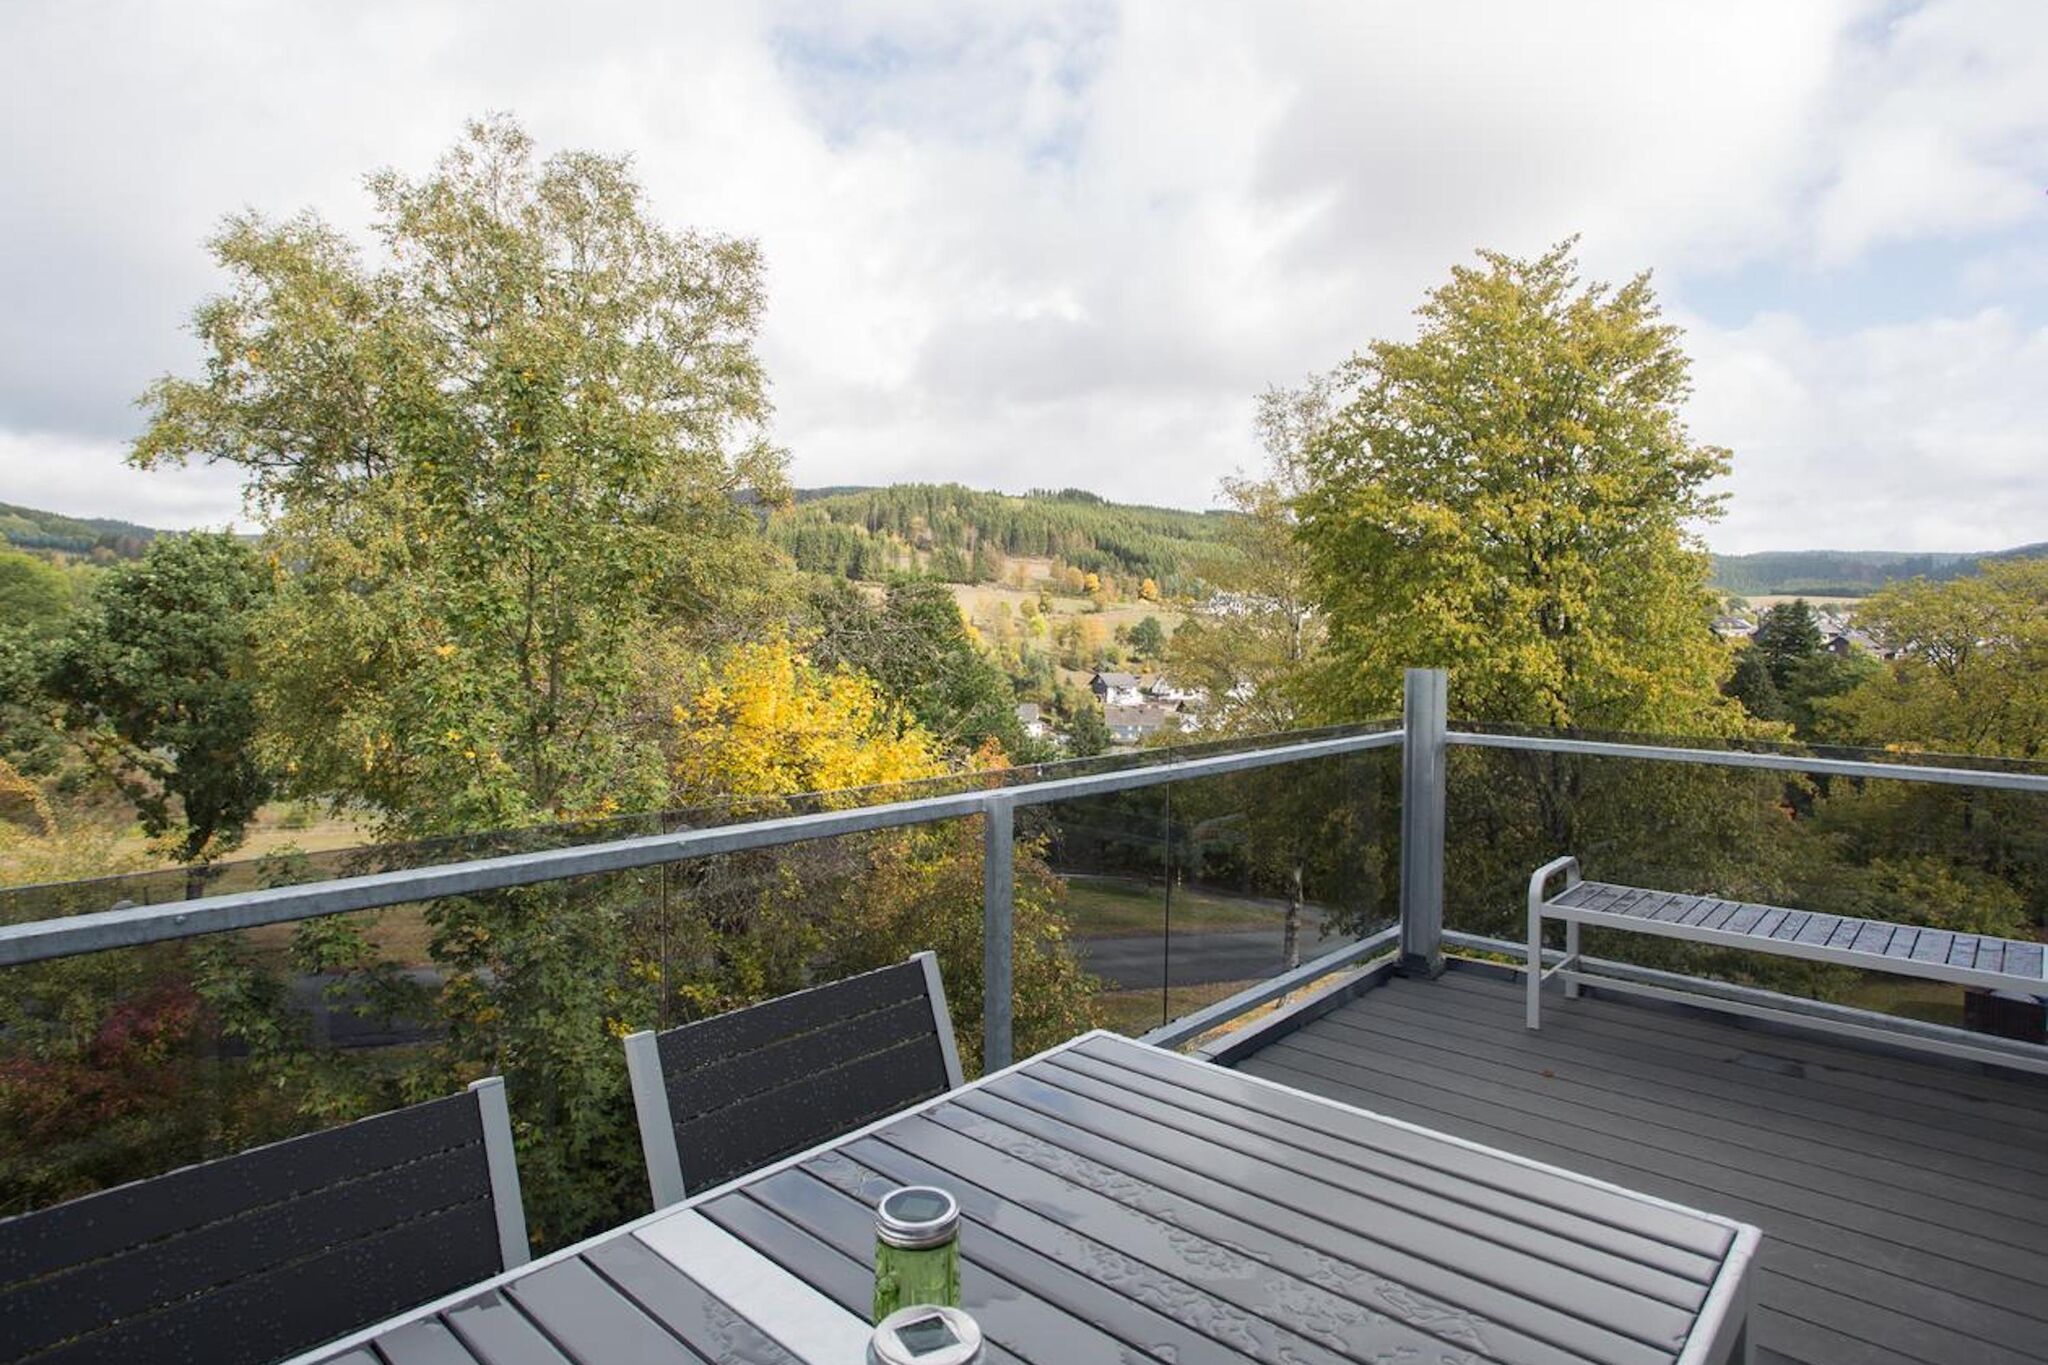 Charmant vakantie-appartement in Winterberg met balkon en gebruik van de sauna